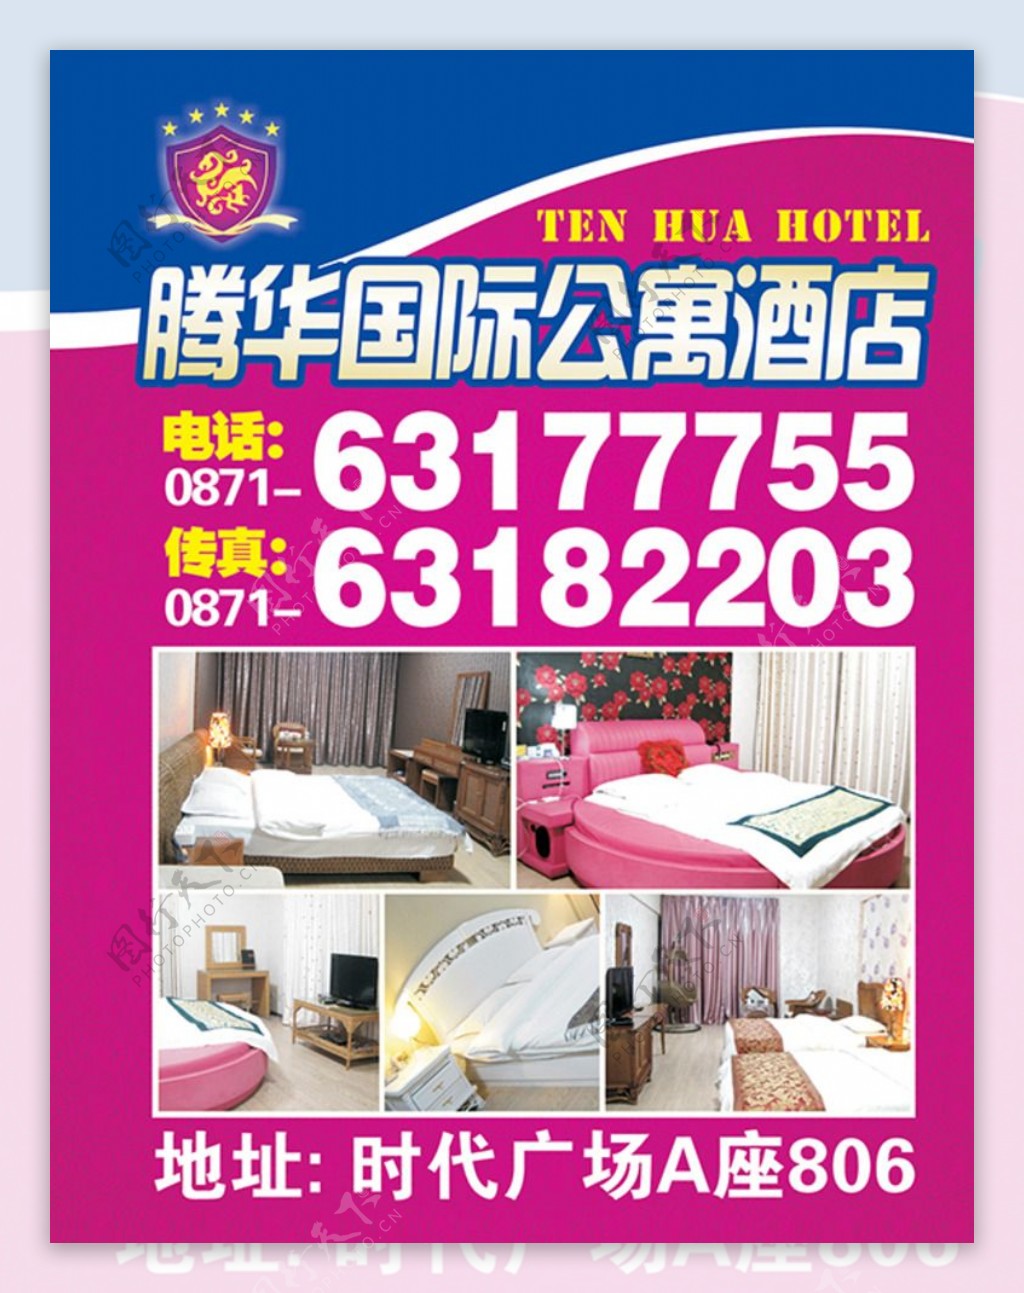 公寓酒店广告图片